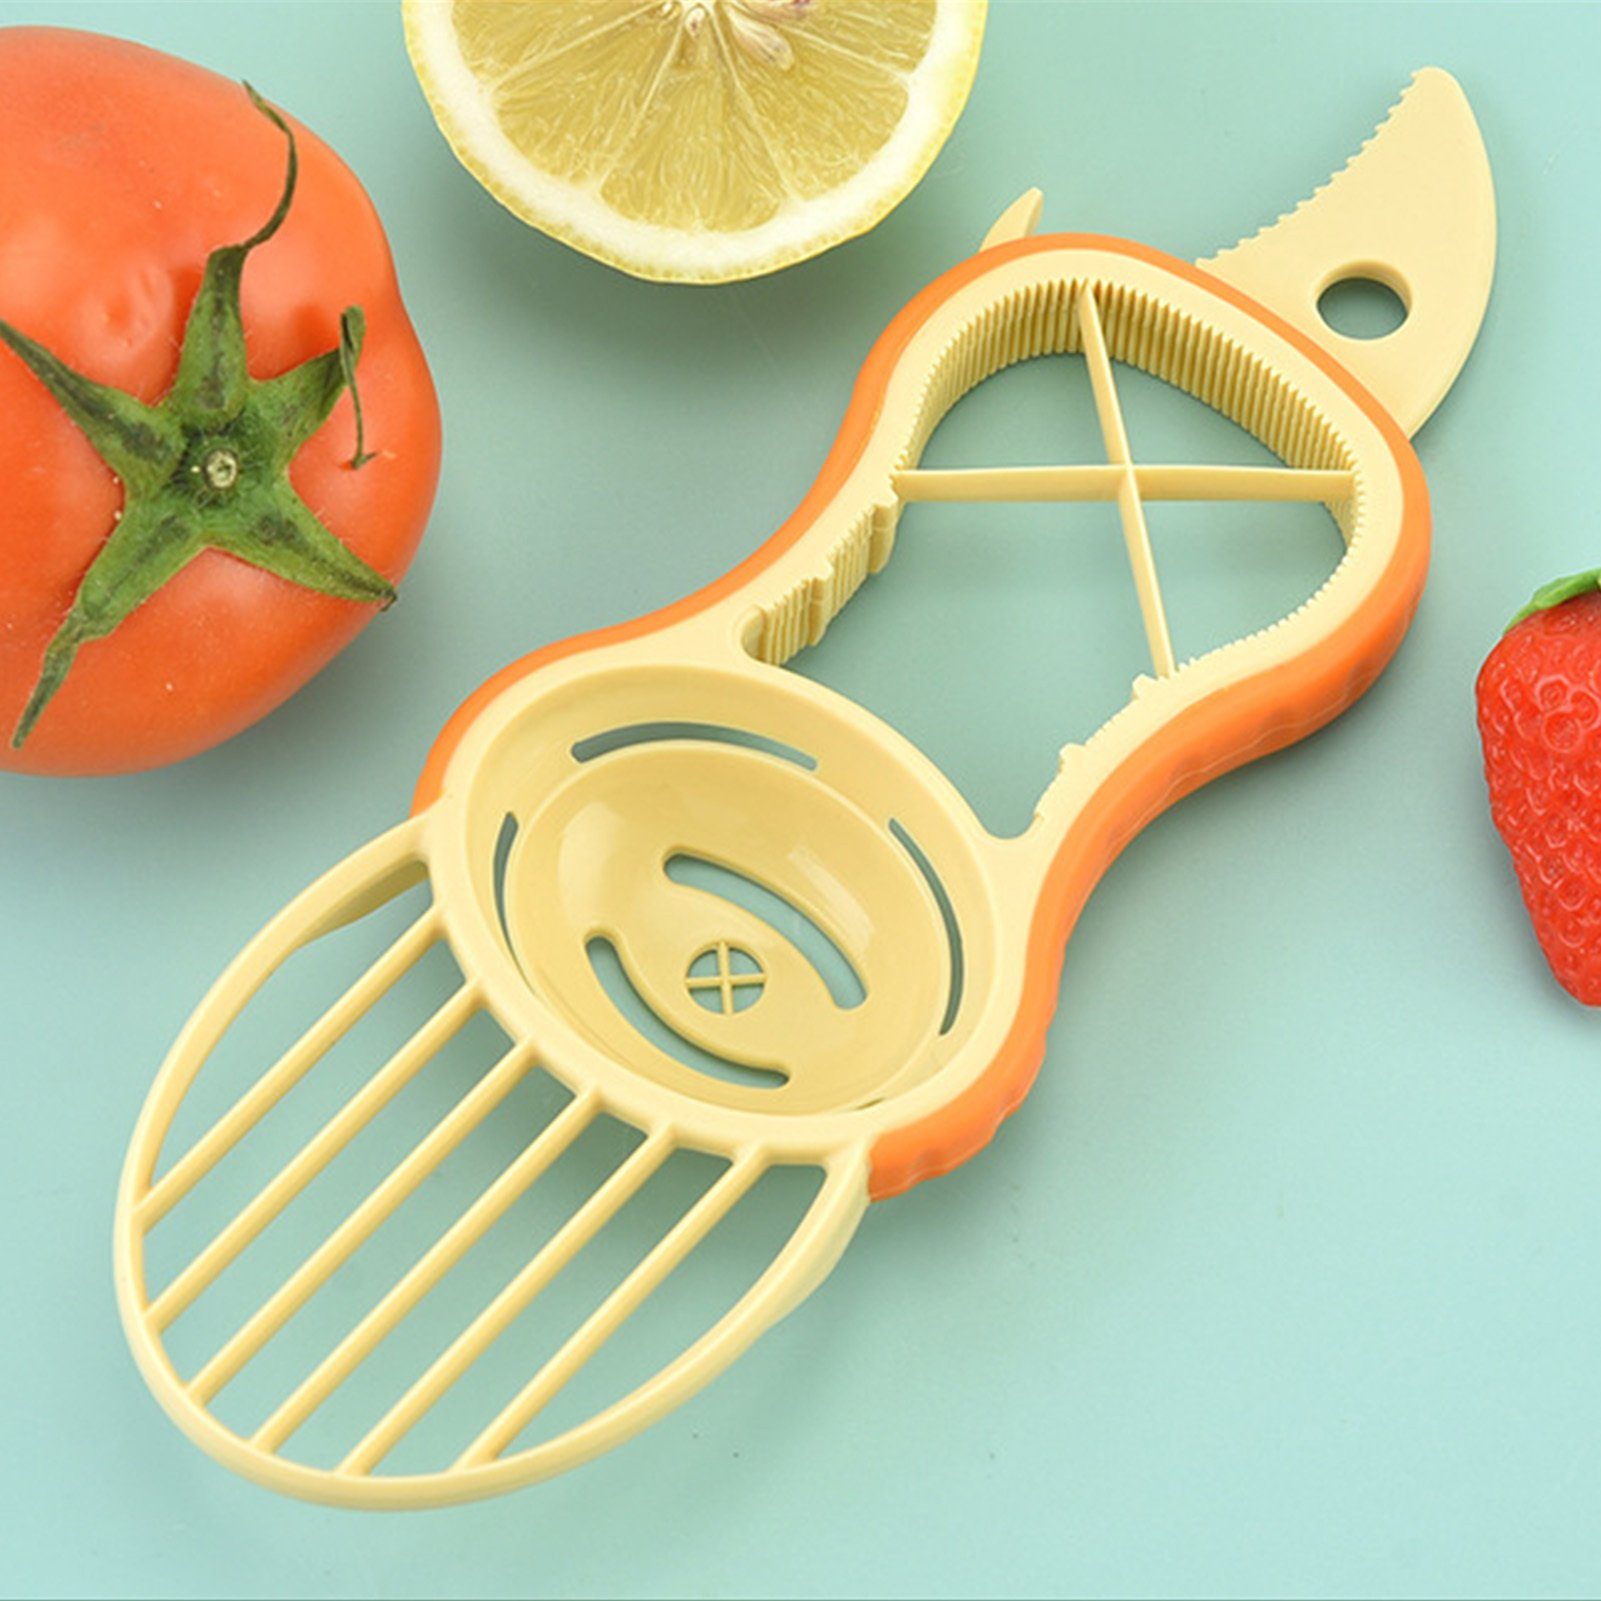 Gemüseschneider Mehrzweck-Obstscheibenwerkzeug Kleiner Blusmart Tragbares Küche Obstschneider orange weiß